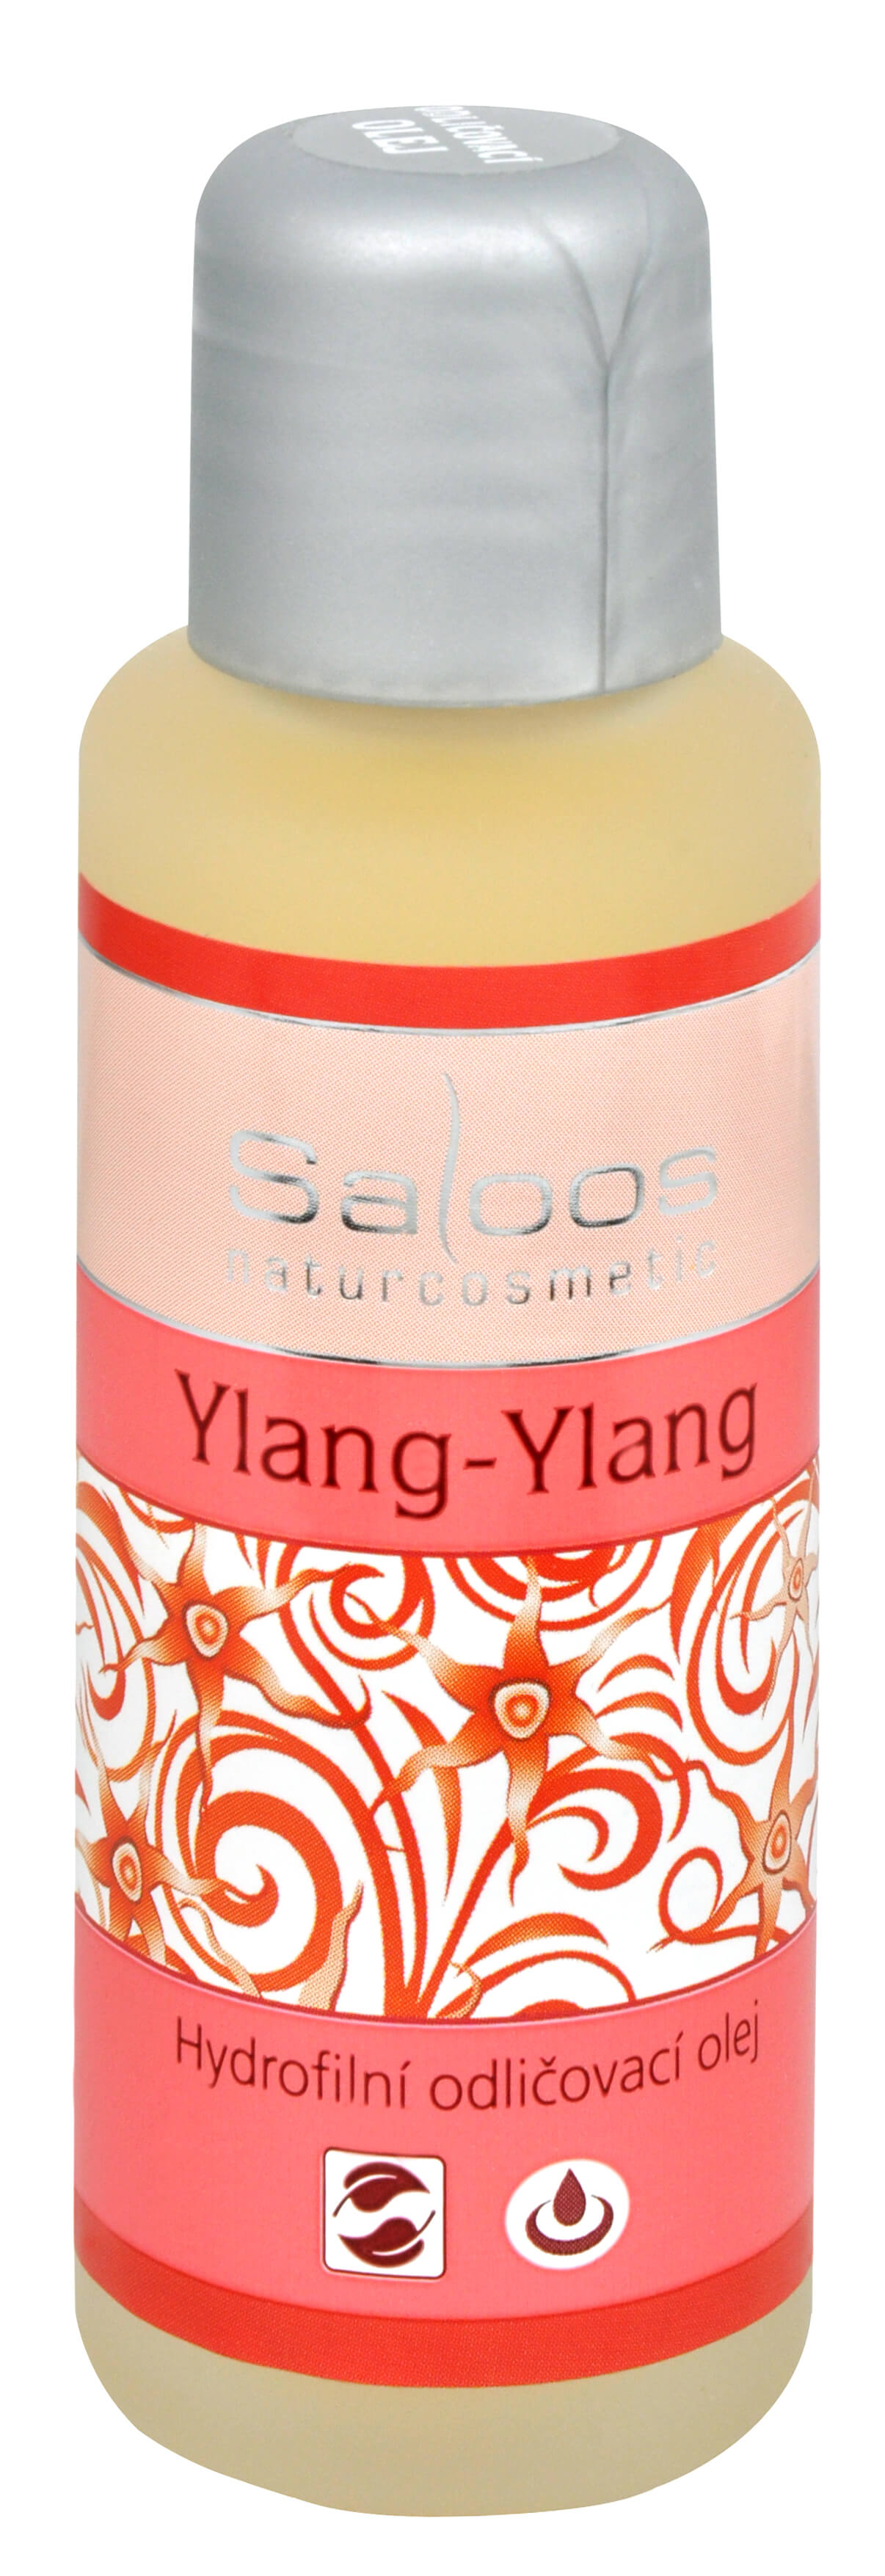 Zobrazit detail výrobku Saloos Hydrofilní odličovací olej - Ylang-Ylang 50 ml + 2 měsíce na vrácení zboží